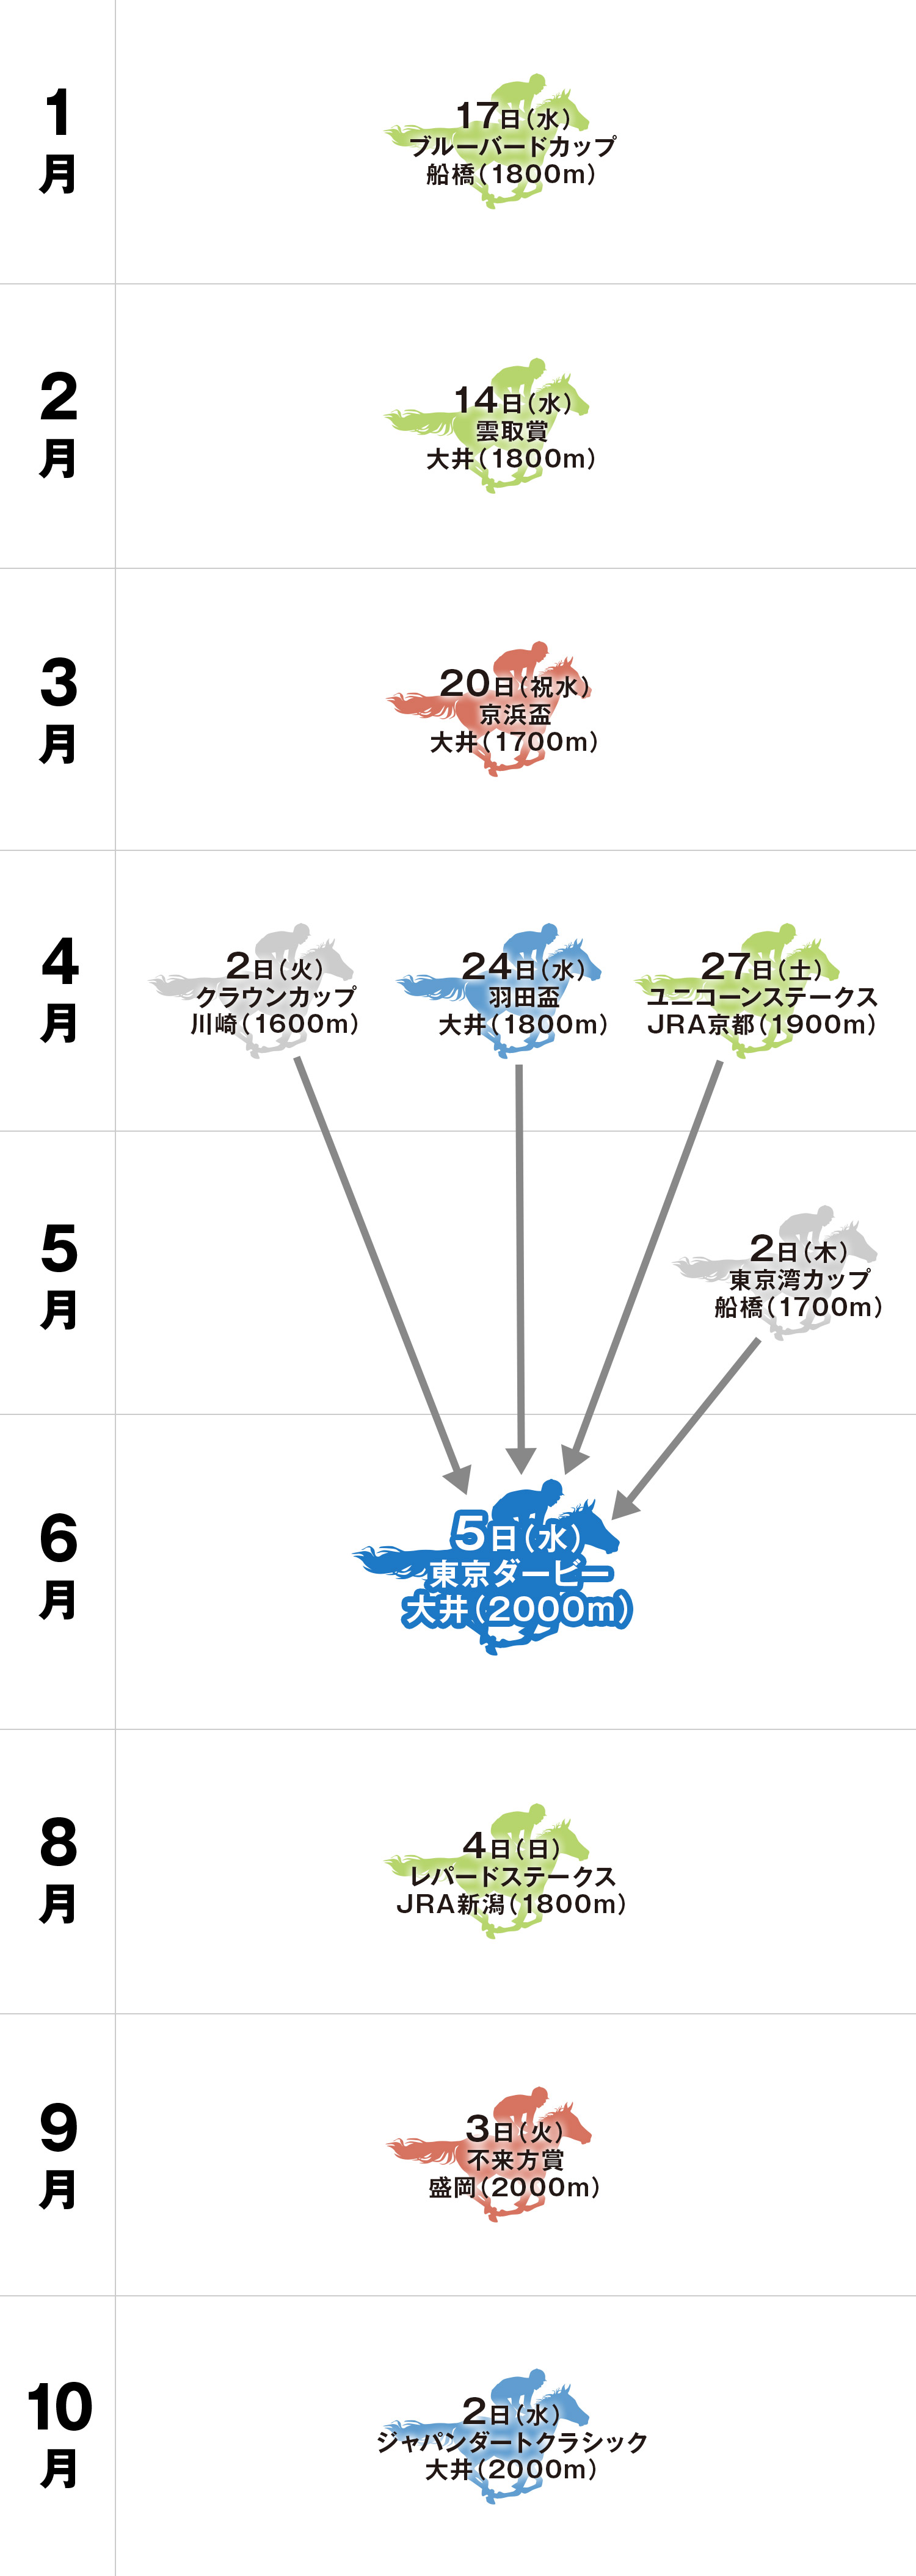 東京ダービー 体系図